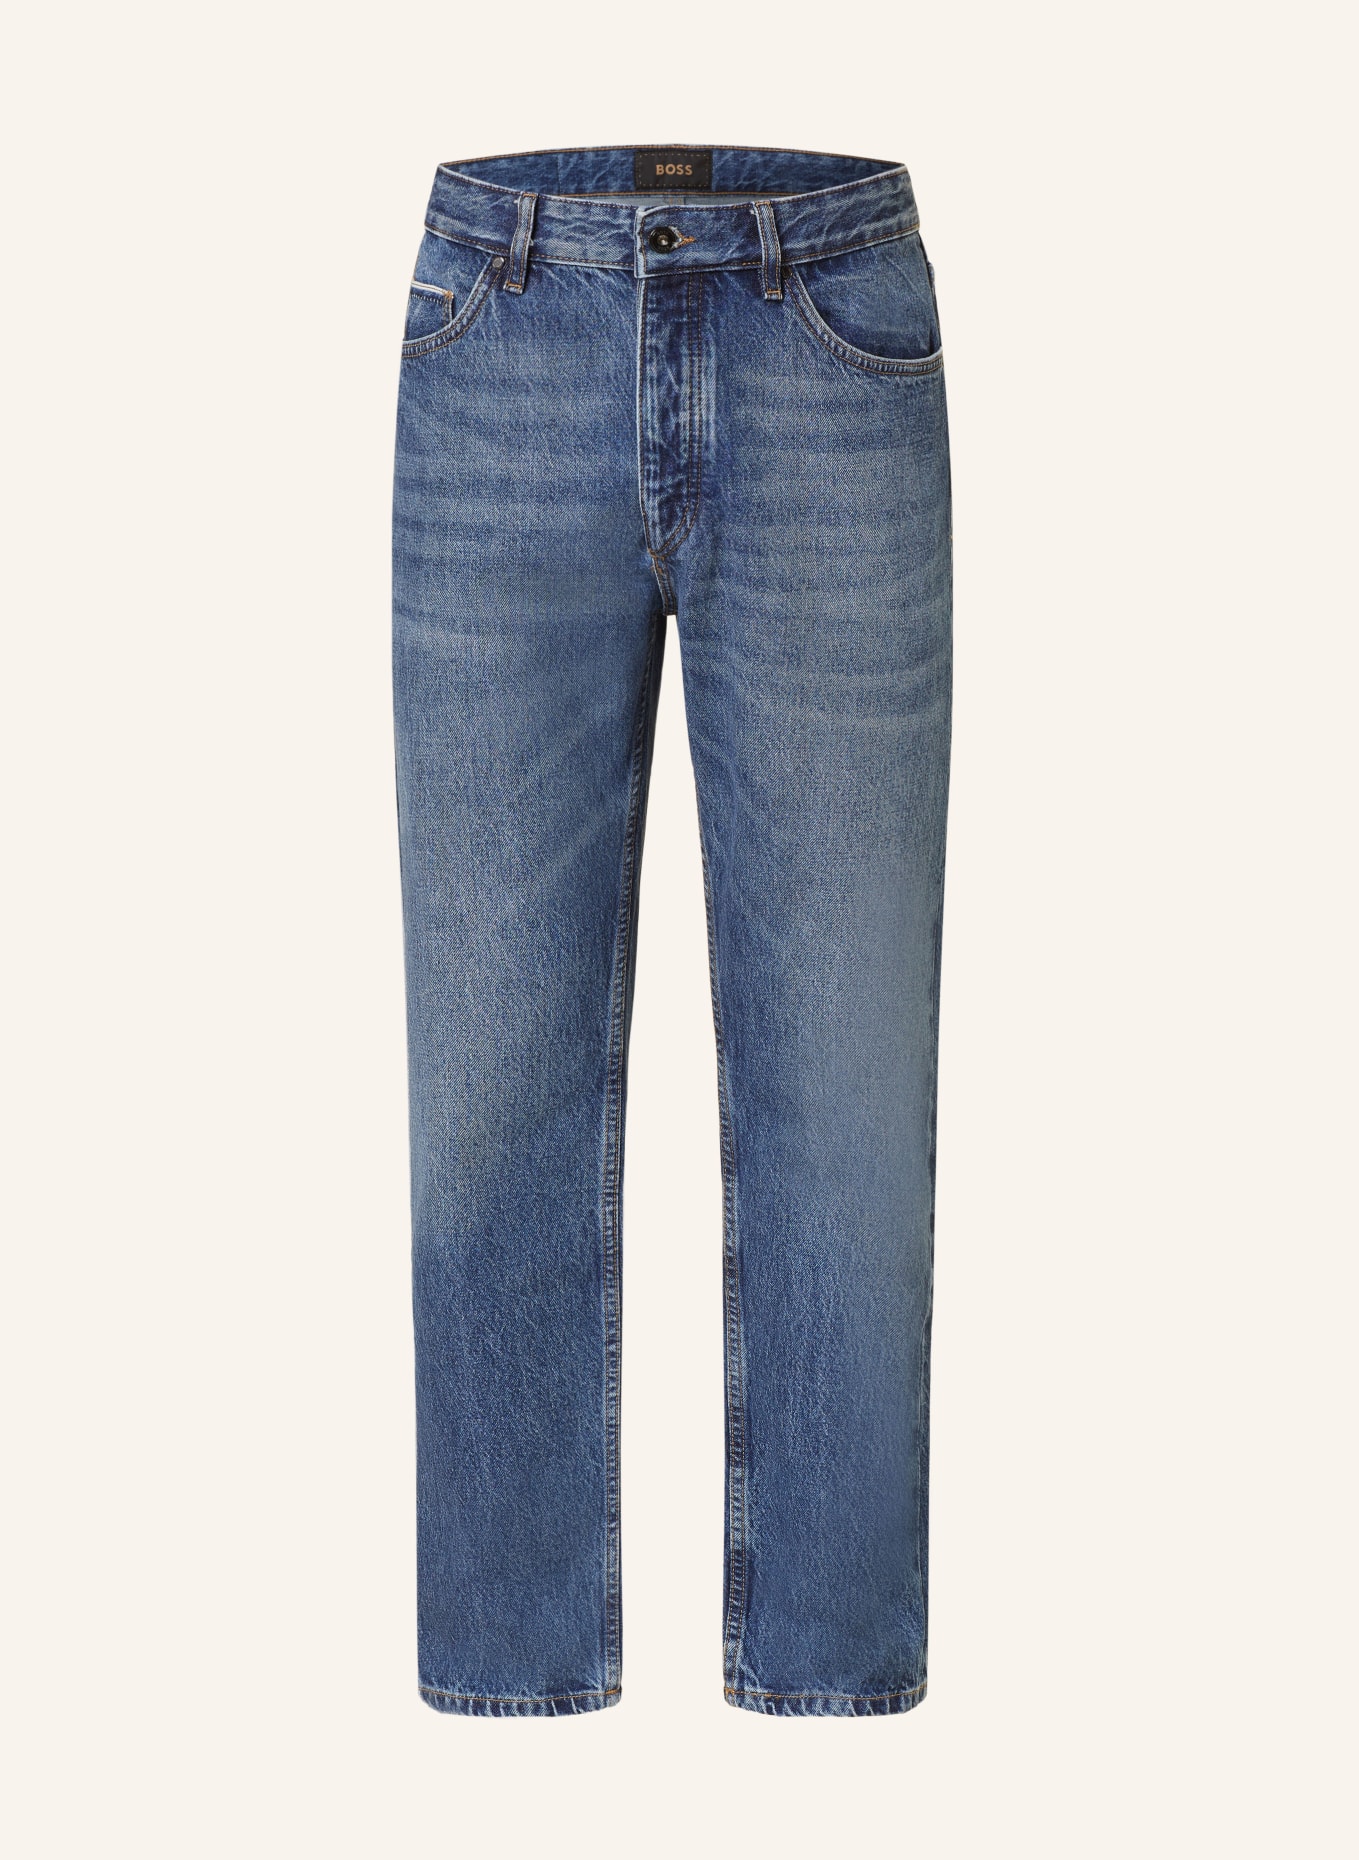 BOSS Jeans L-WESTWEGO-EDGE Slim Fit, Farbe: 420 MEDIUM BLUE (Bild 1)